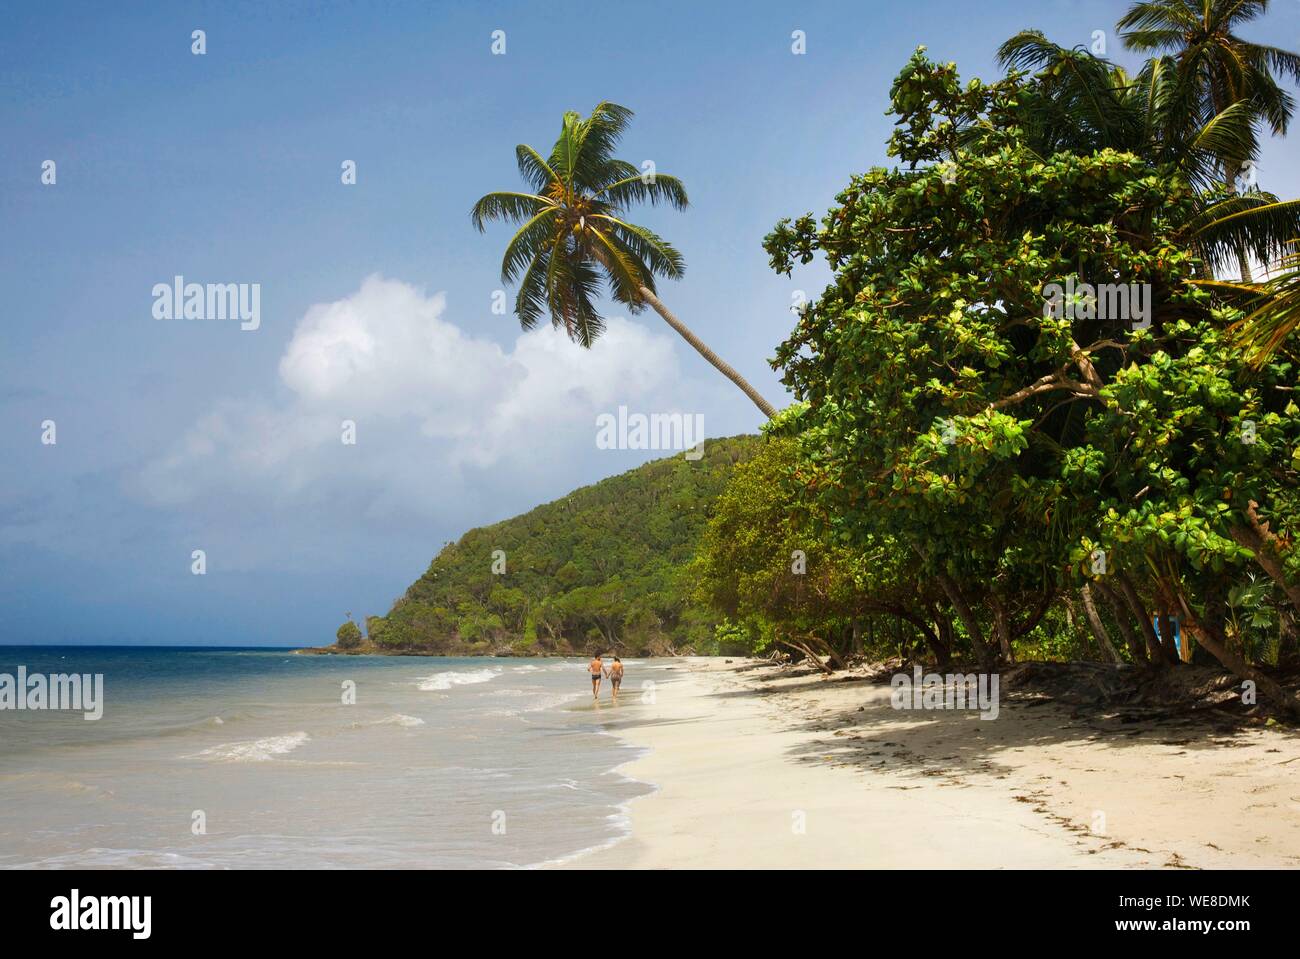 Kolumbien, Ziyaaraiyfushi, paar Walking am Strand von Manzanillo mit hohen Kokospalmen gesäumt und durch das Karibische Meer umspült Stockfoto